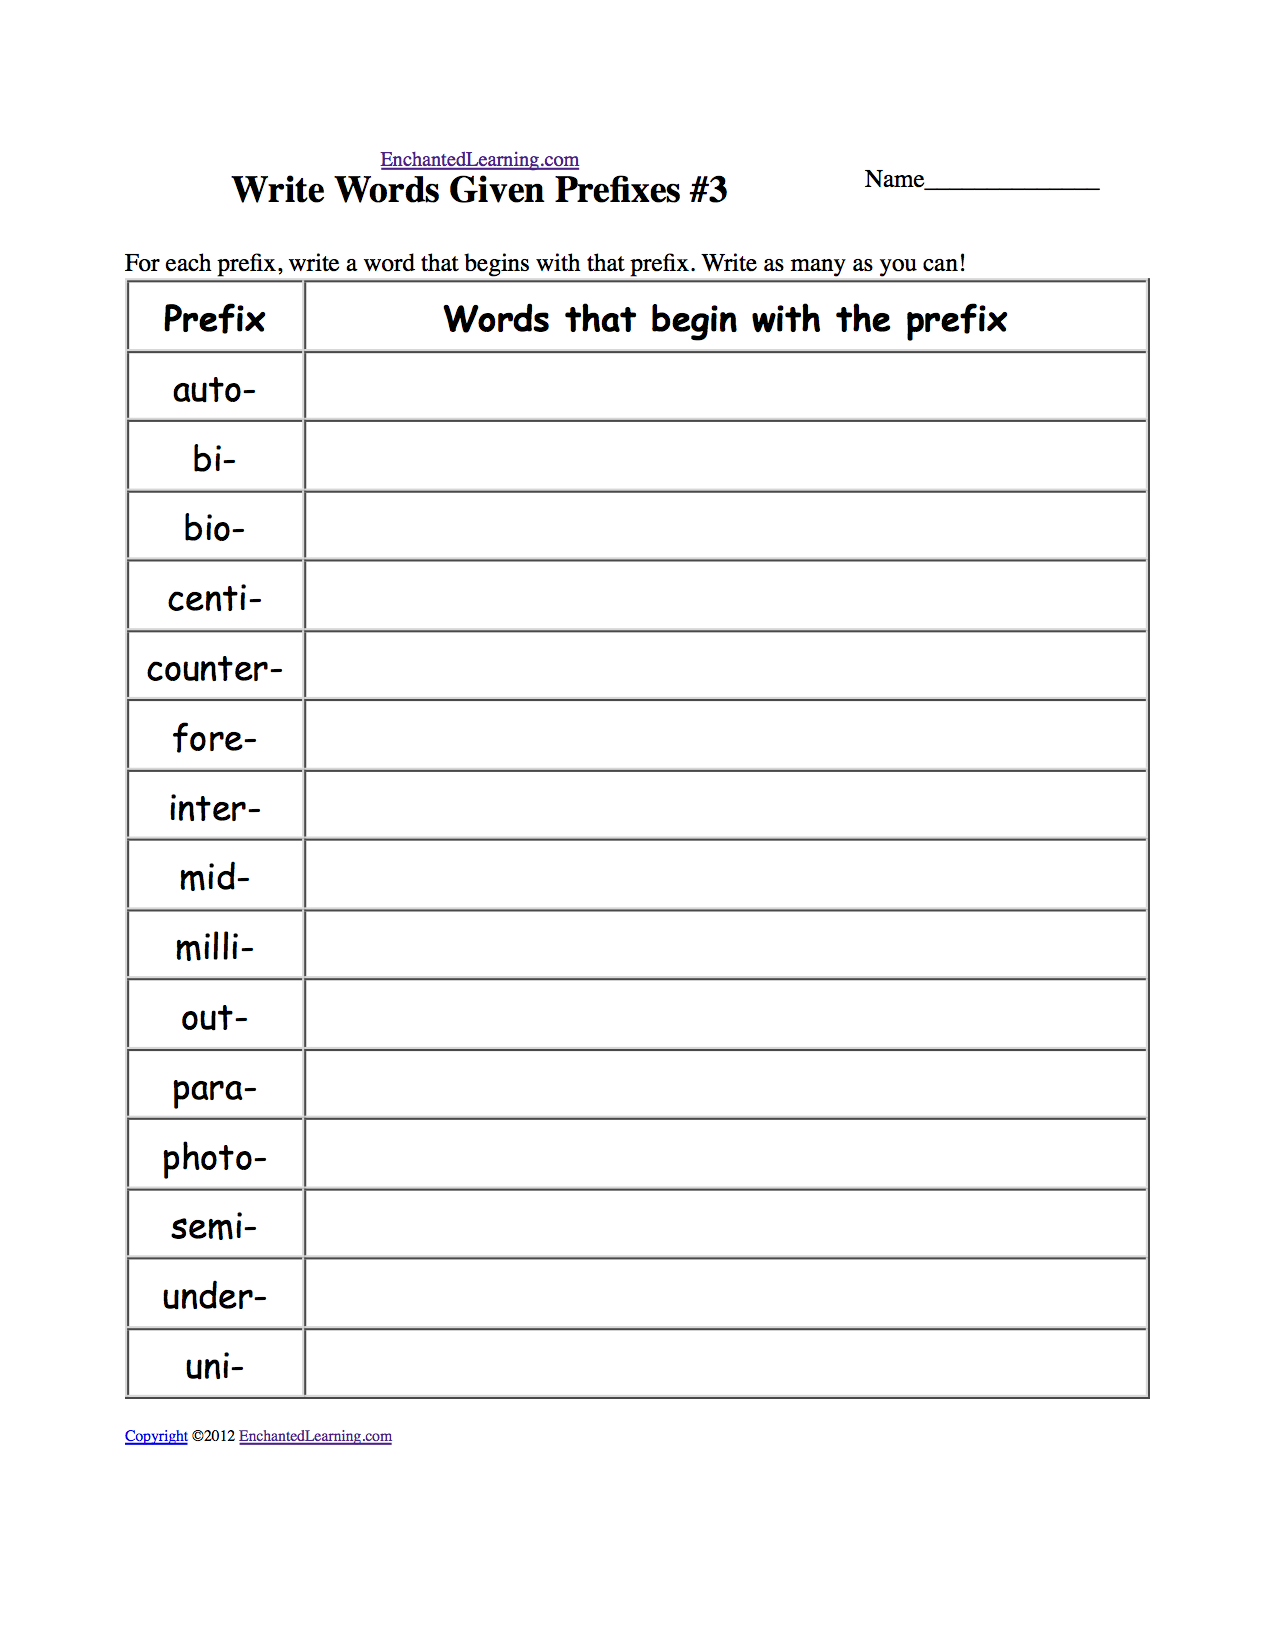 Write Words Given Prefixes #3